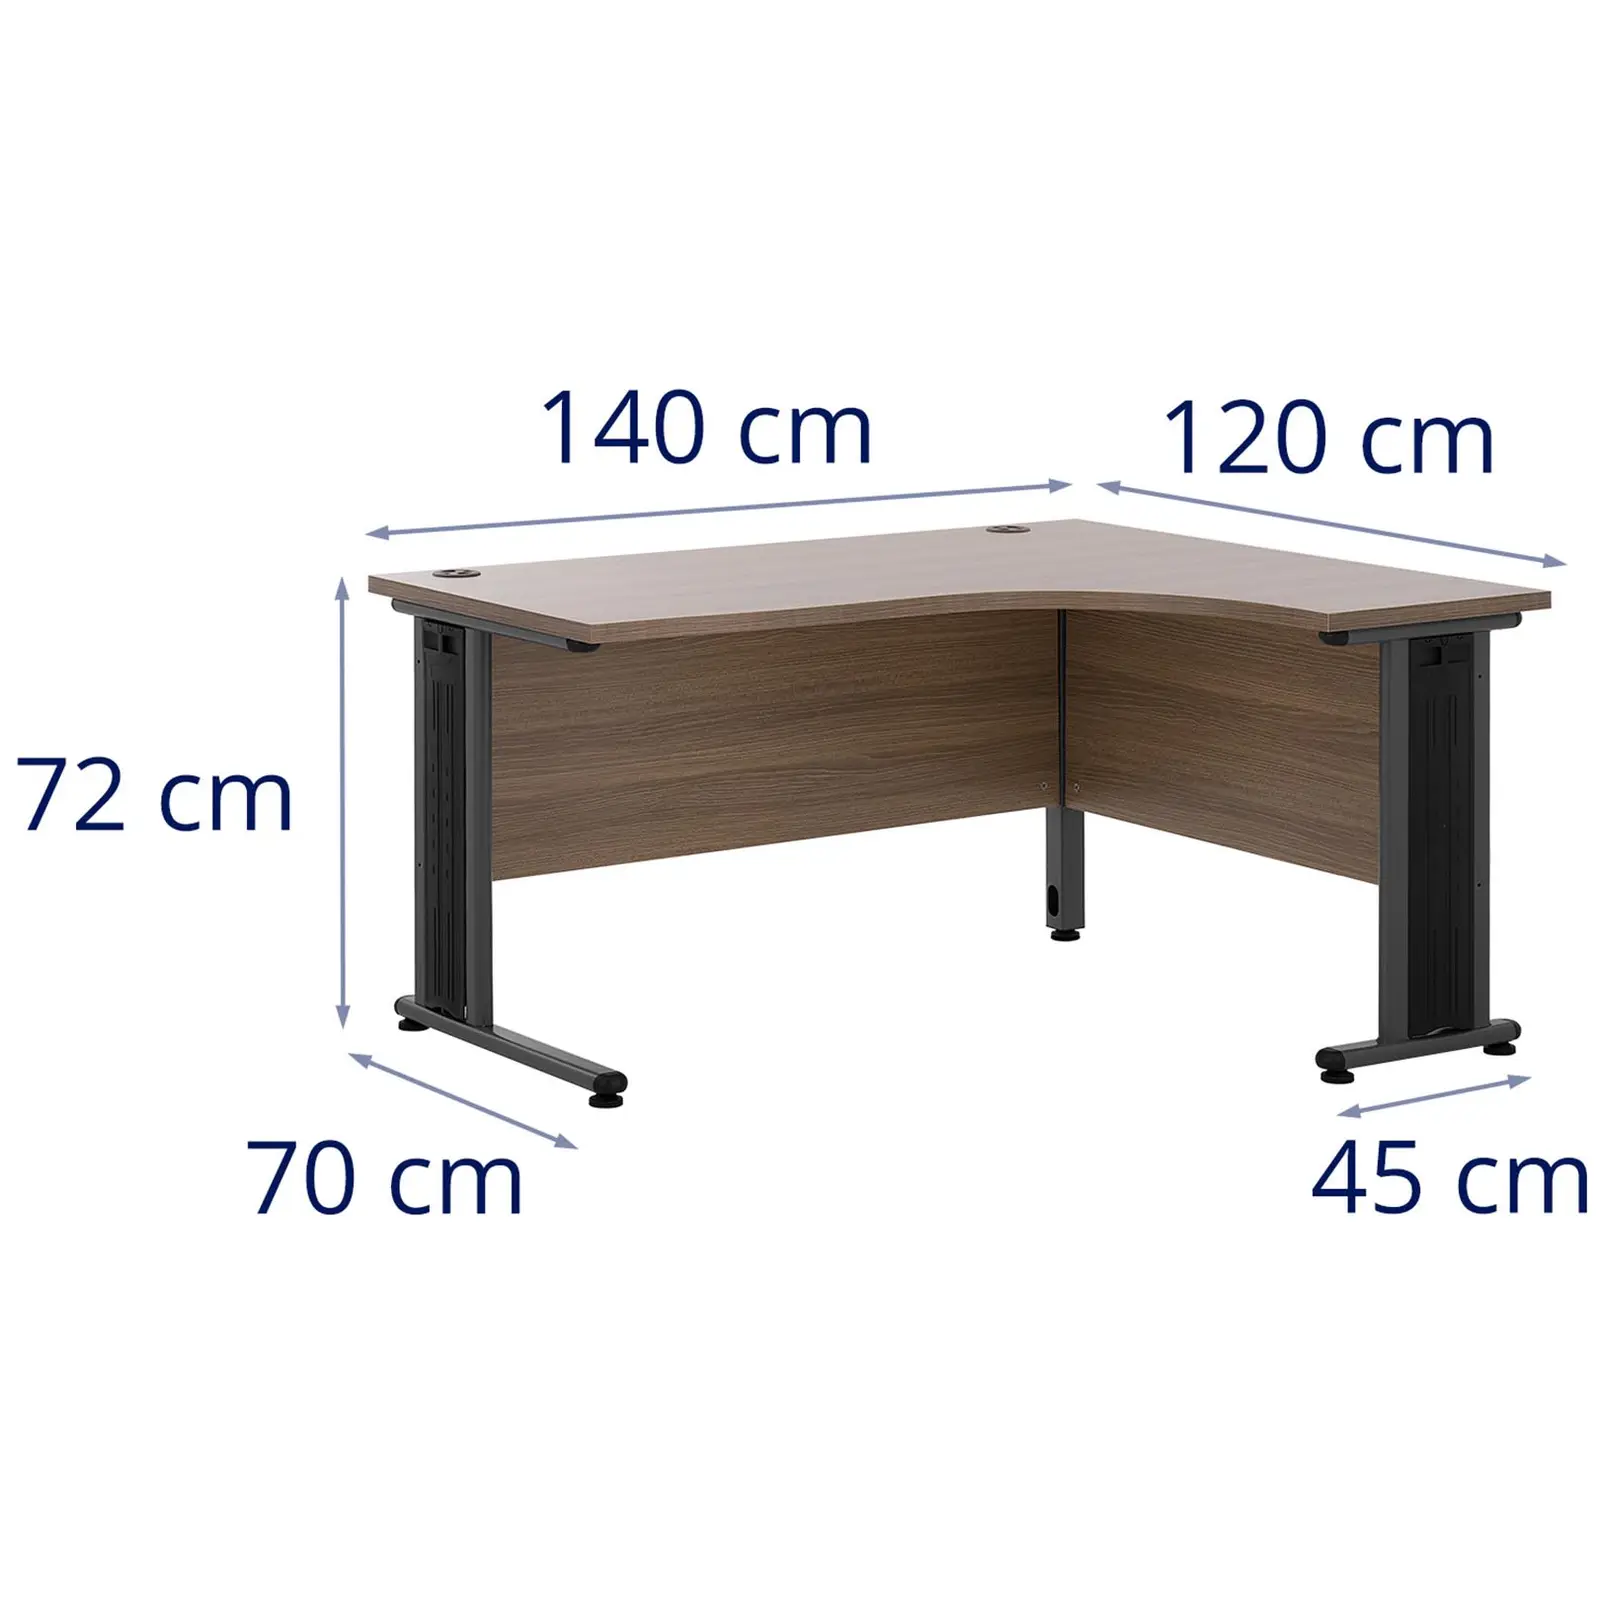 Rohový psací stůl - 140 x 120 cm - hnědá